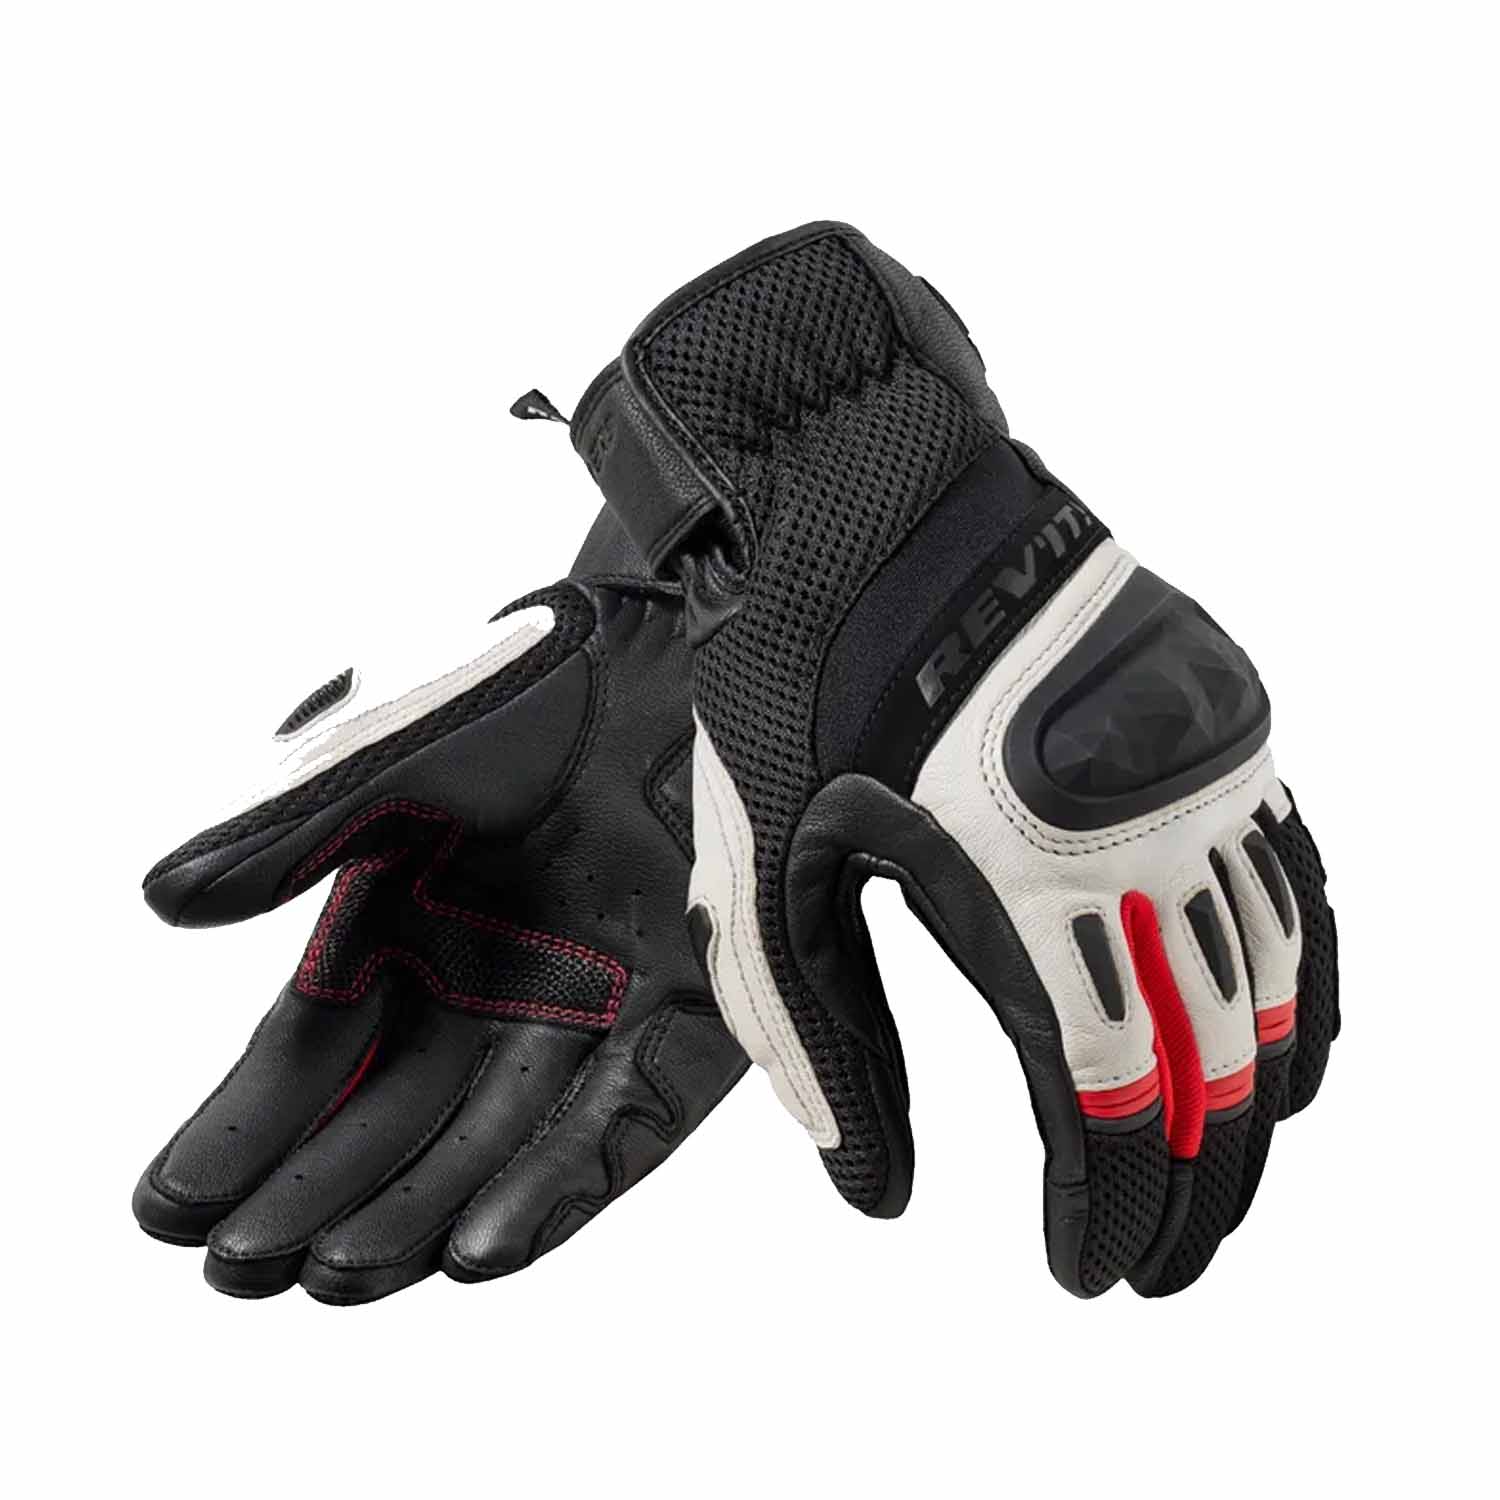 Image of REV'IT! Dirt 4 Gloves Black Red Size 3XL EN